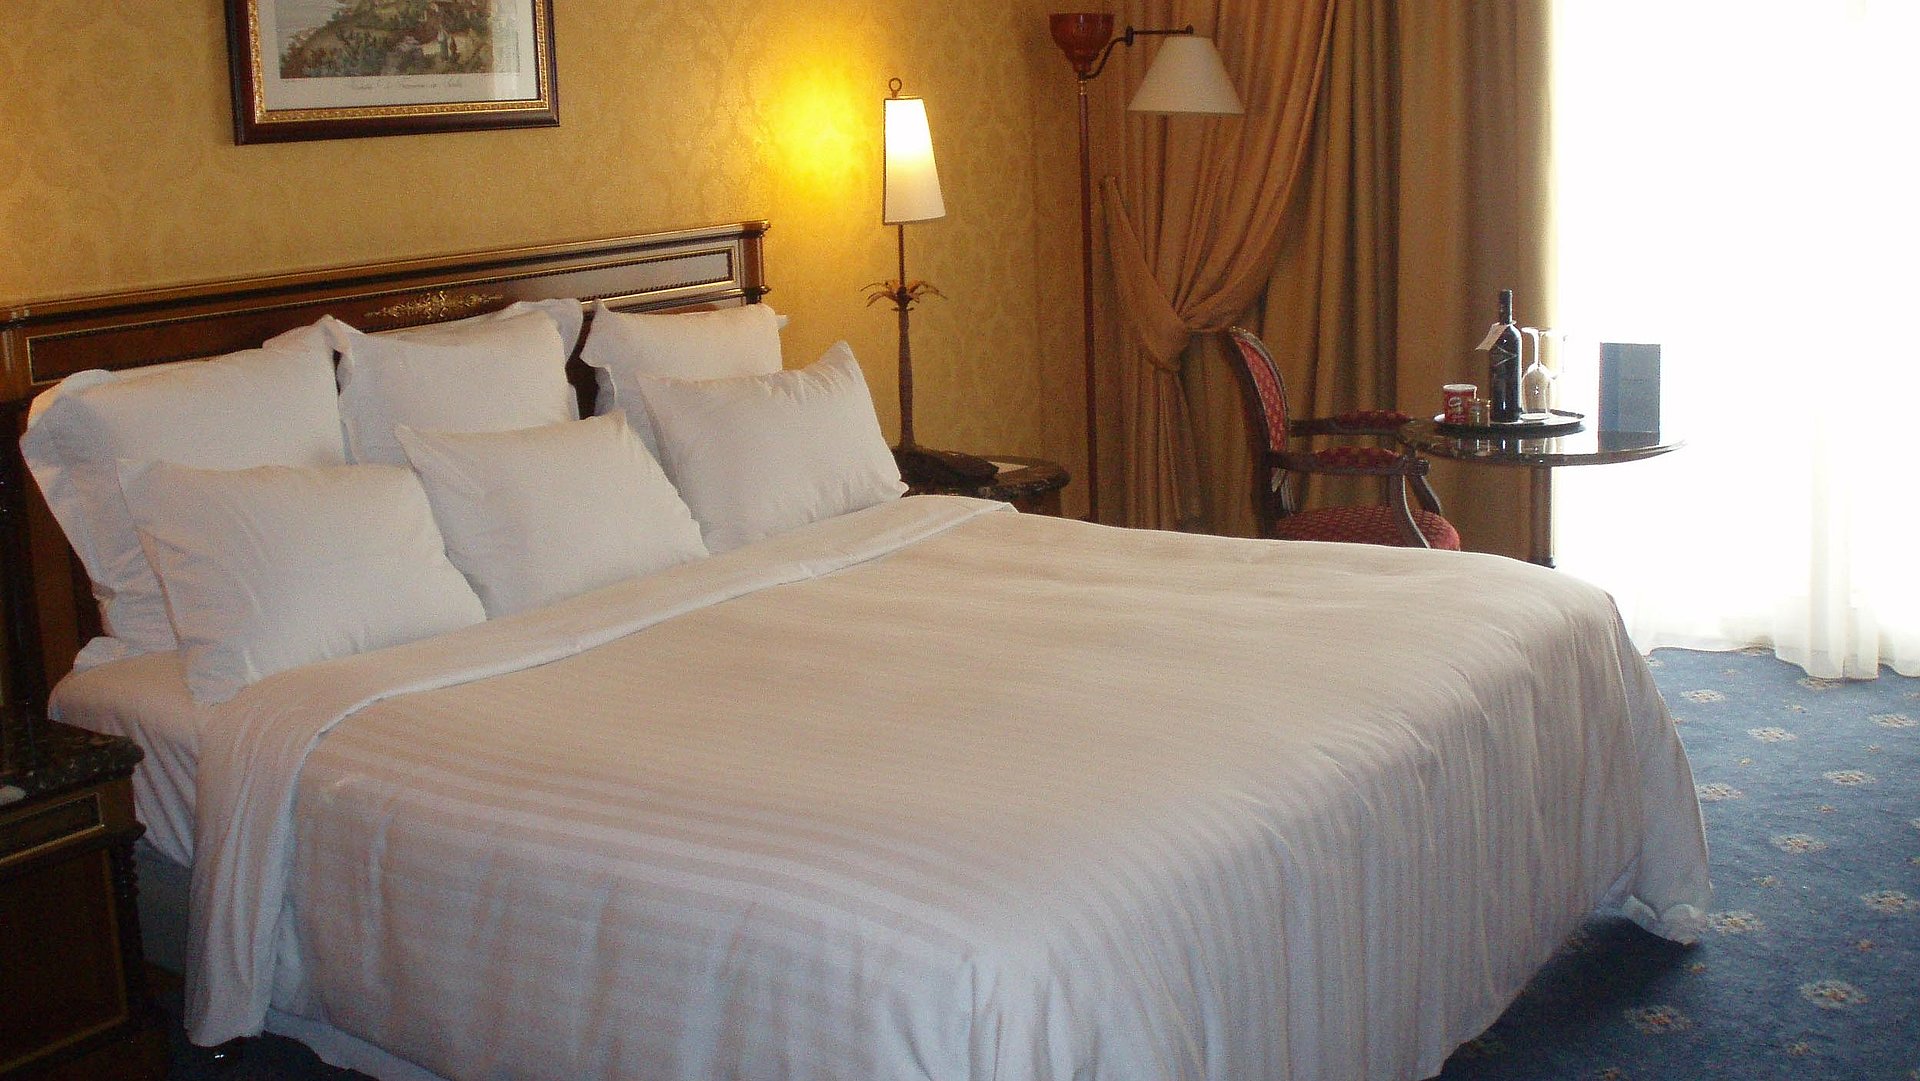 Übernachten Panorama in Franken - sehr ordentliches Hotelzimmer mit großem Bett, warmer Nachtlampe und Wandgemälde